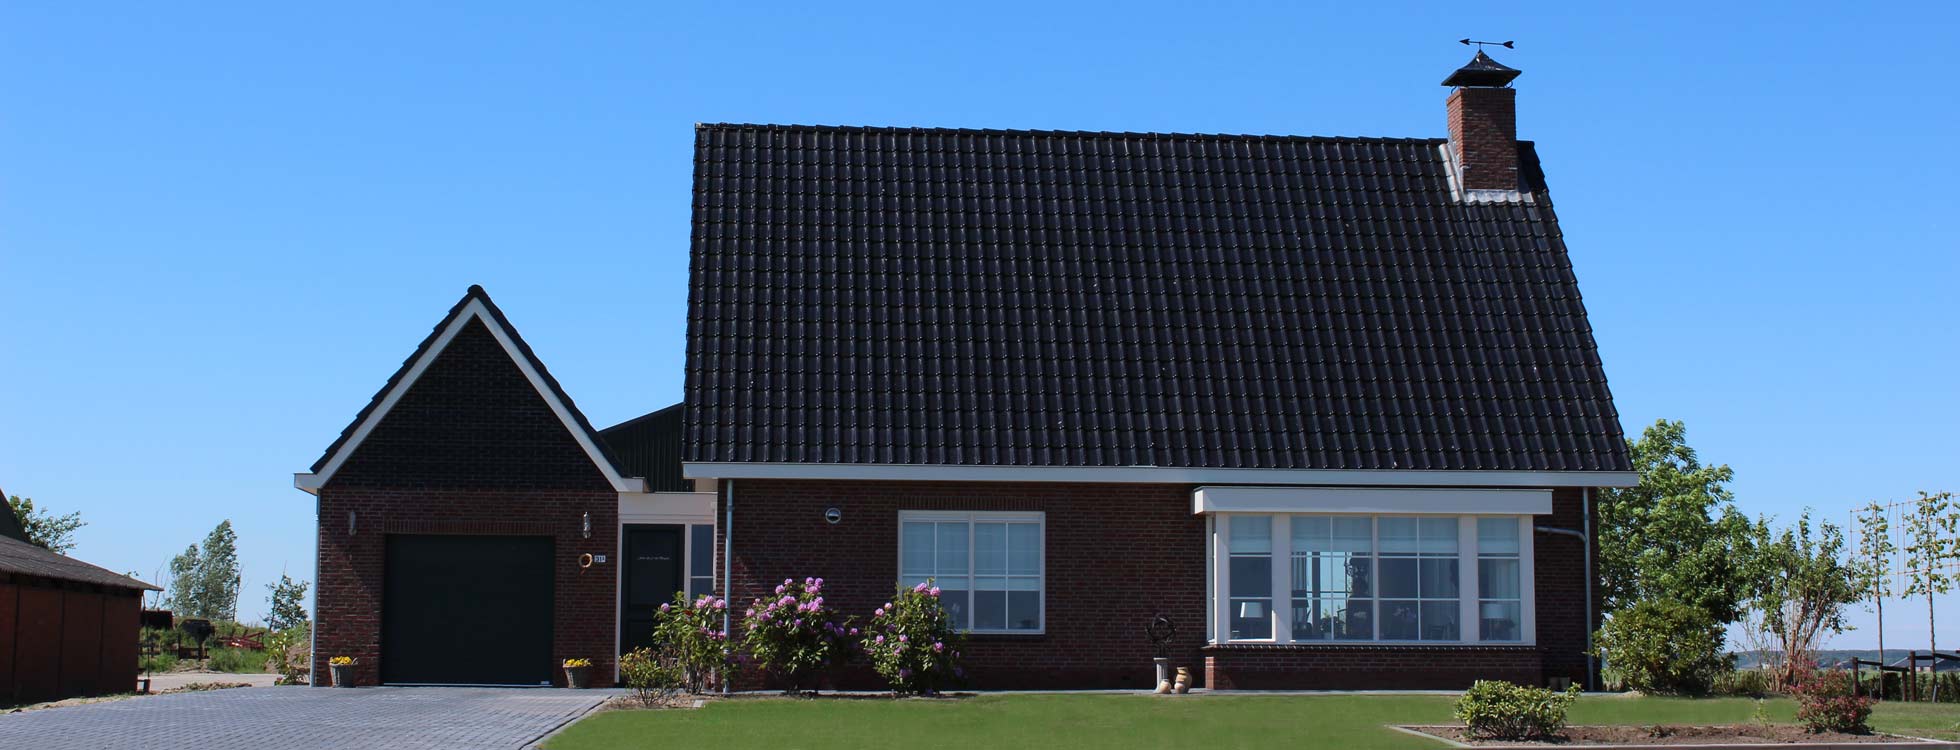 bouw van vrijstaande woning - vrijstaand huis in Kamperveen (gemeente kampen) door aannemersbedrijf Wielink